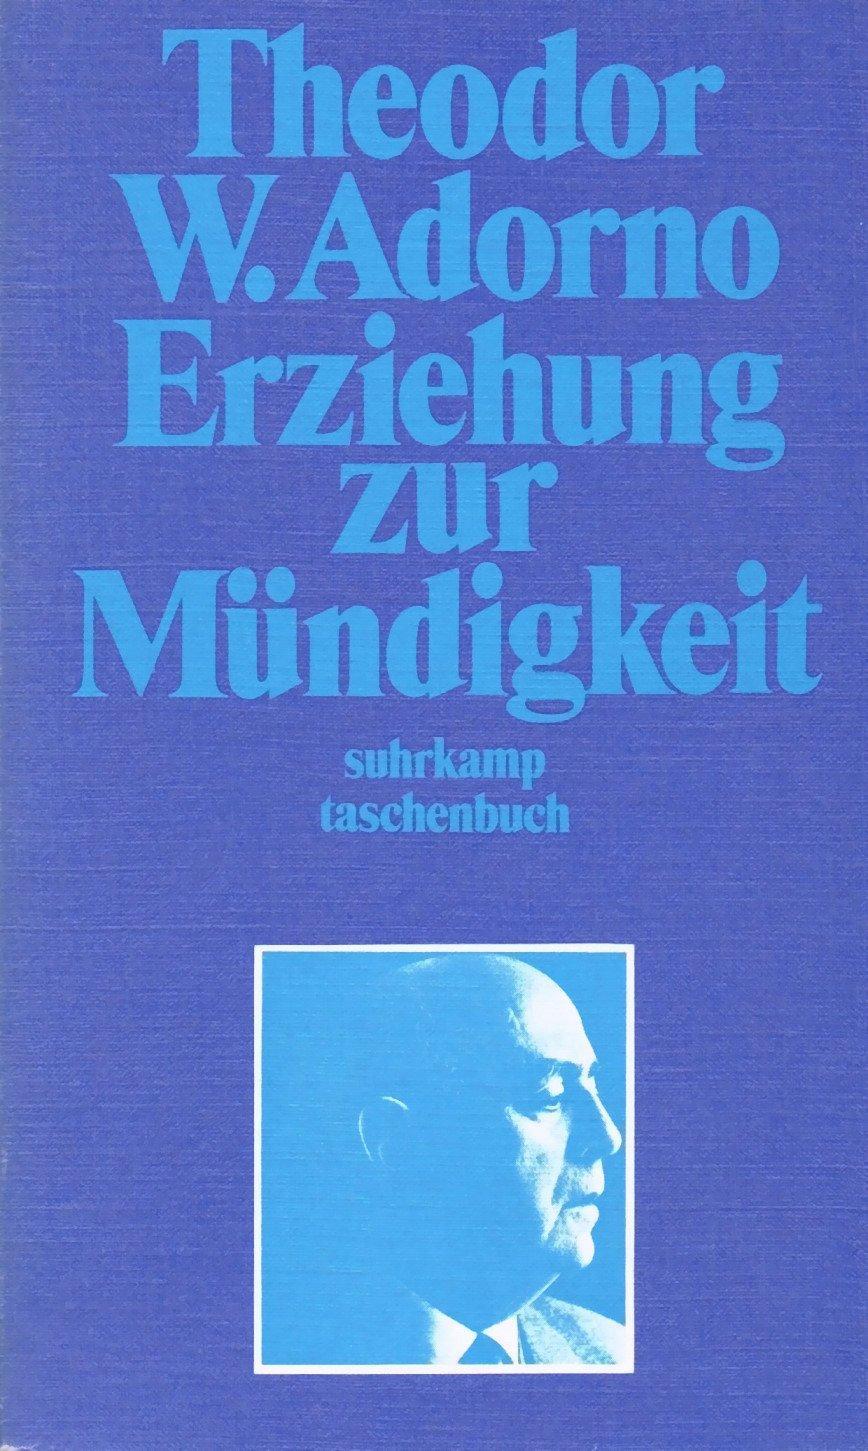 Theodor W. Adorno: Erziehung zur Mündigkeit (German language, 1970, Suhrkamp Verlag)